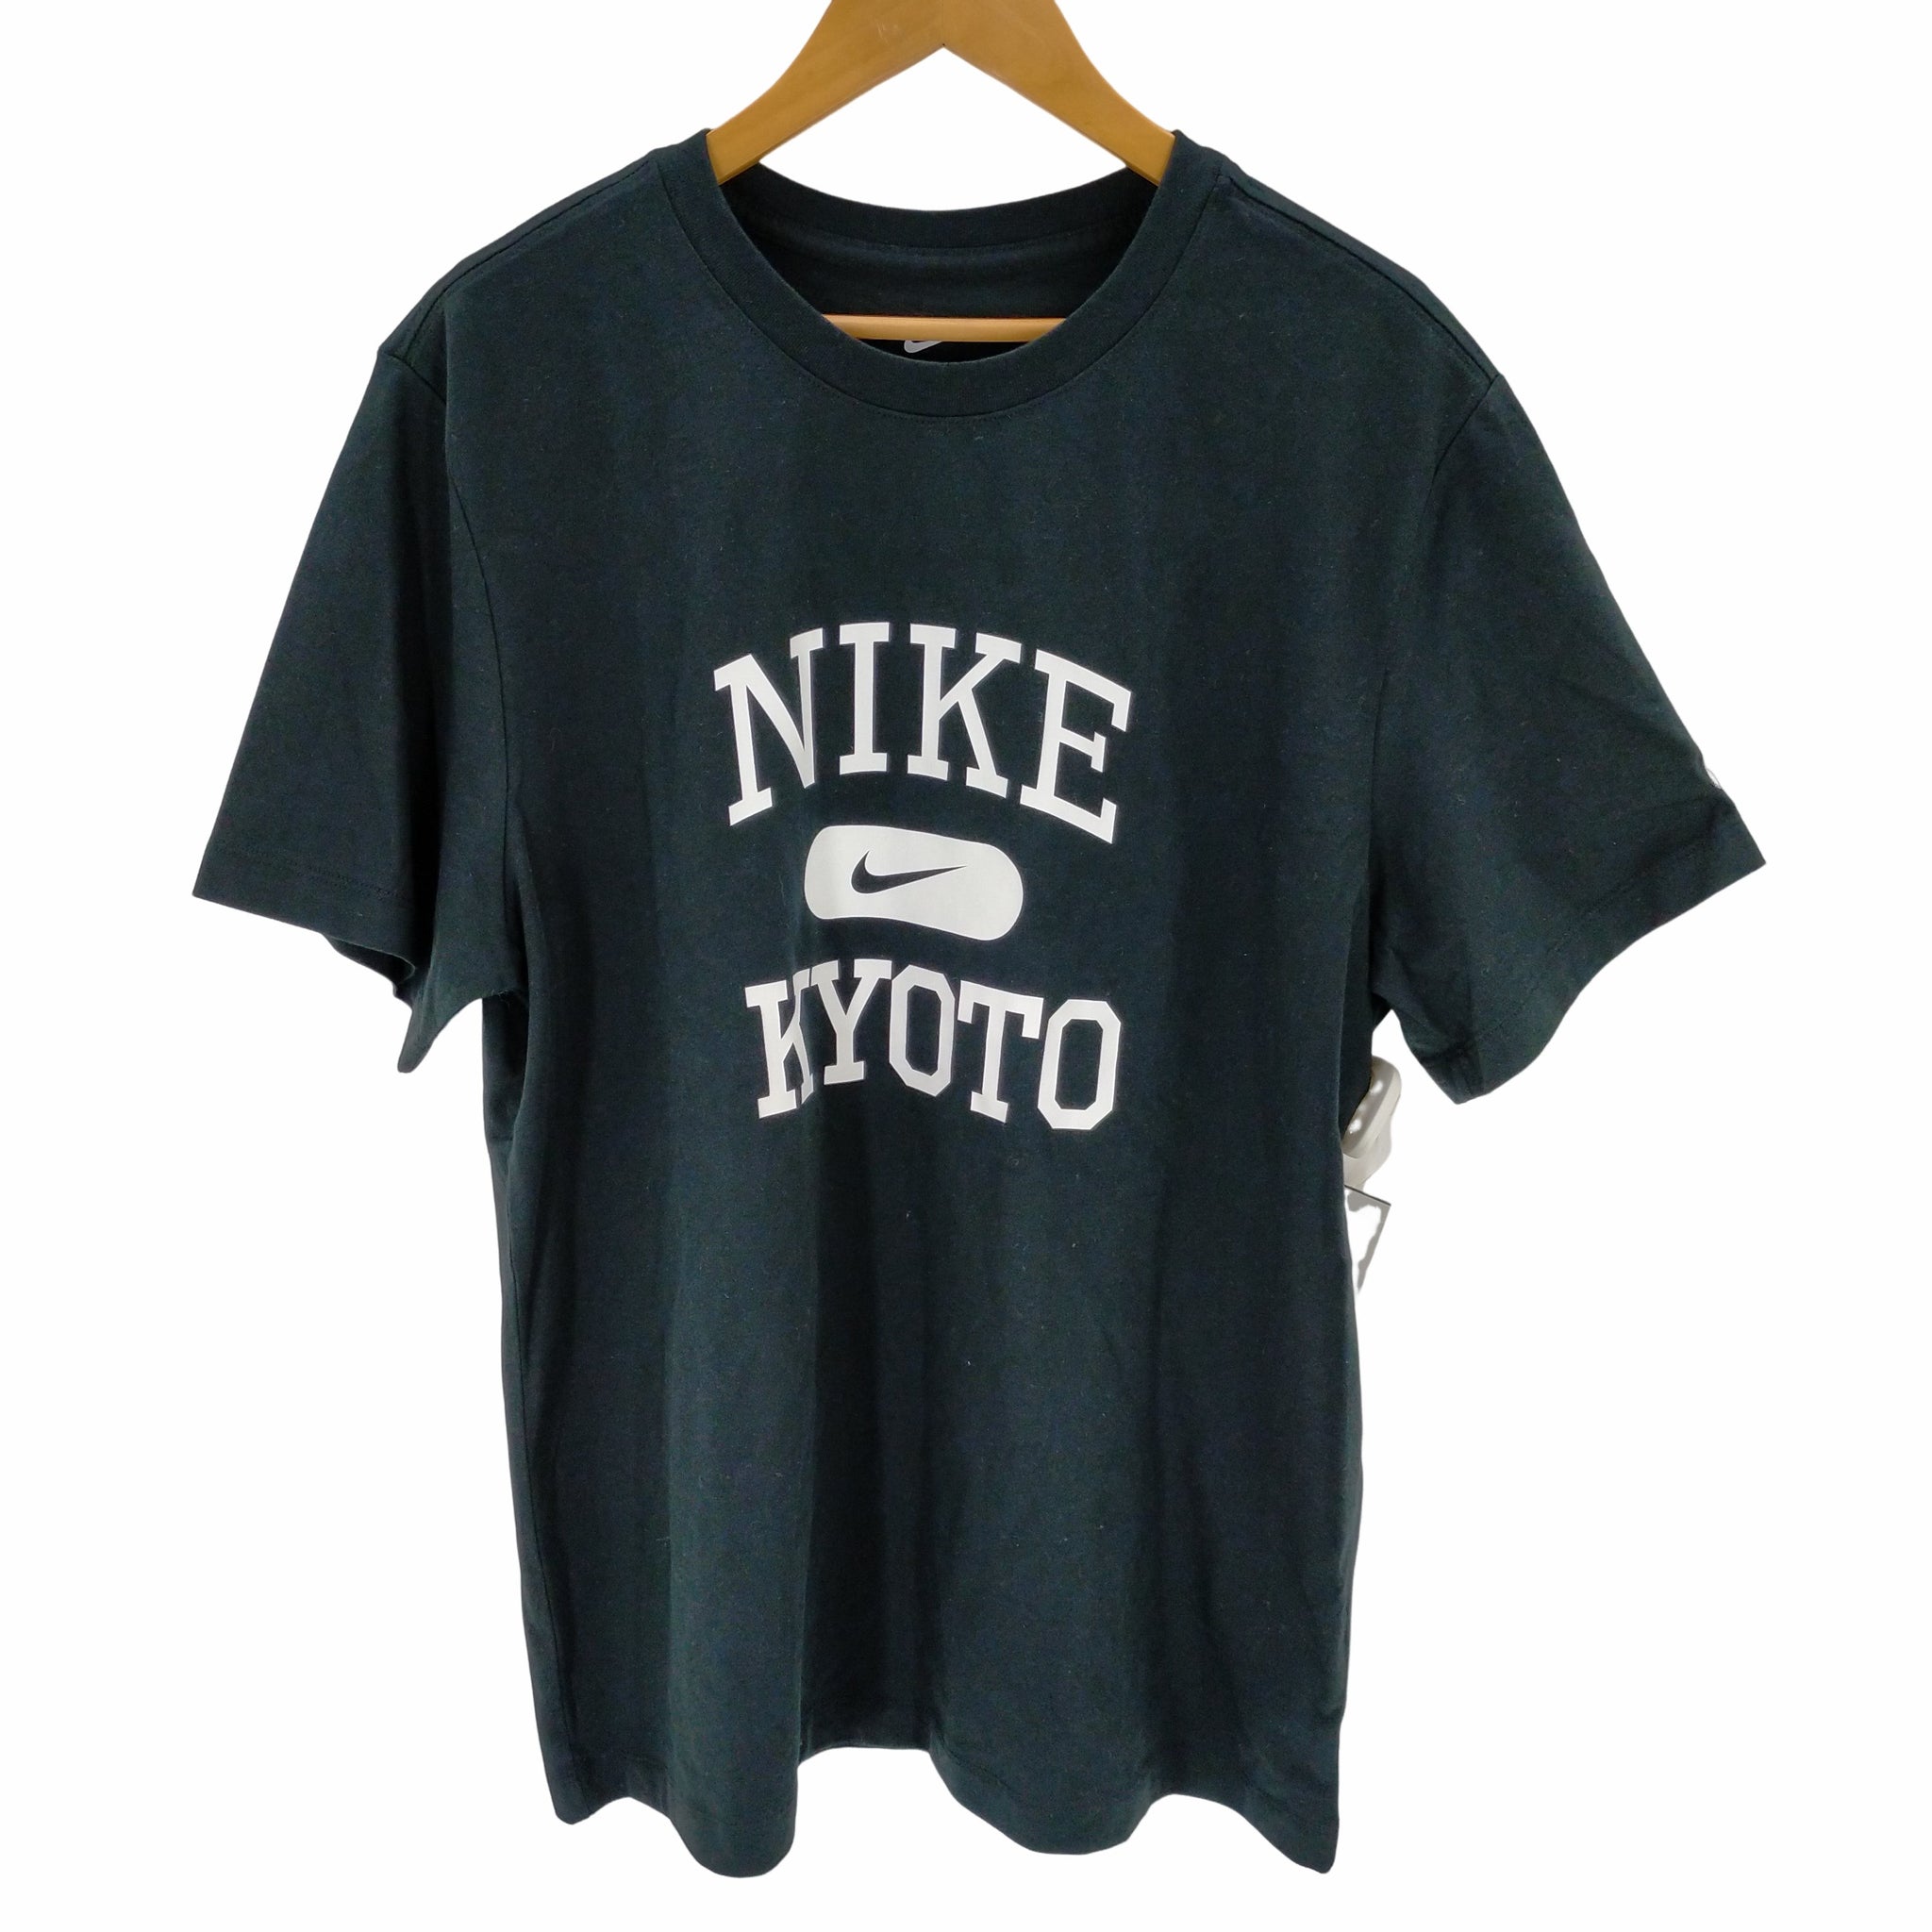 NIKE(ナイキ)KYOTO プリント Tシャツ